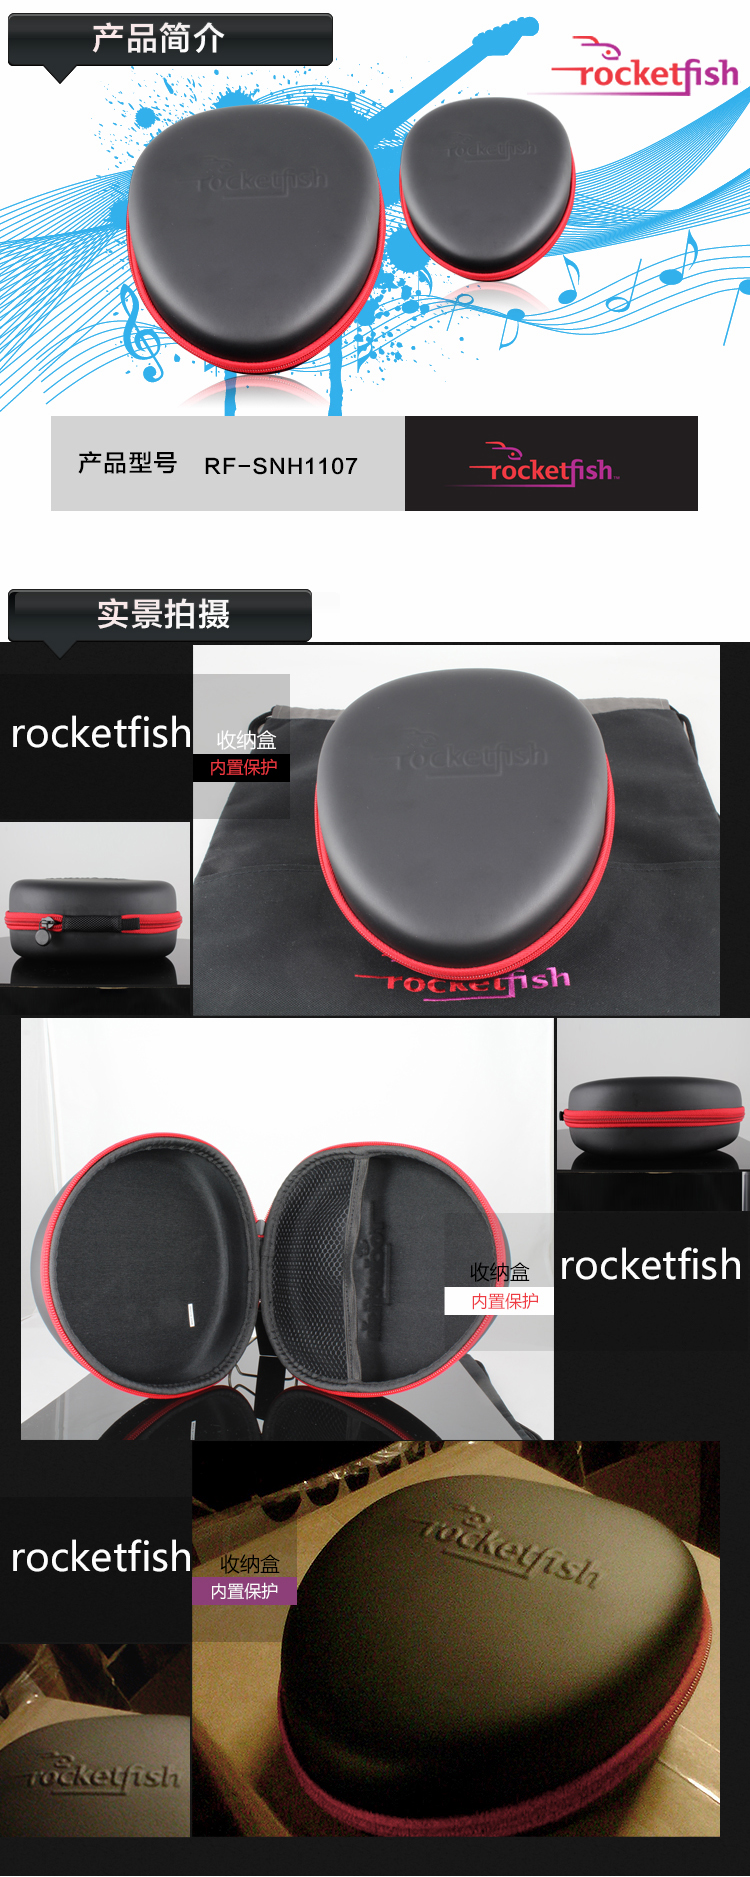 箭鱼 (rocketfish) 耳机收纳盒 百思买专业定制款